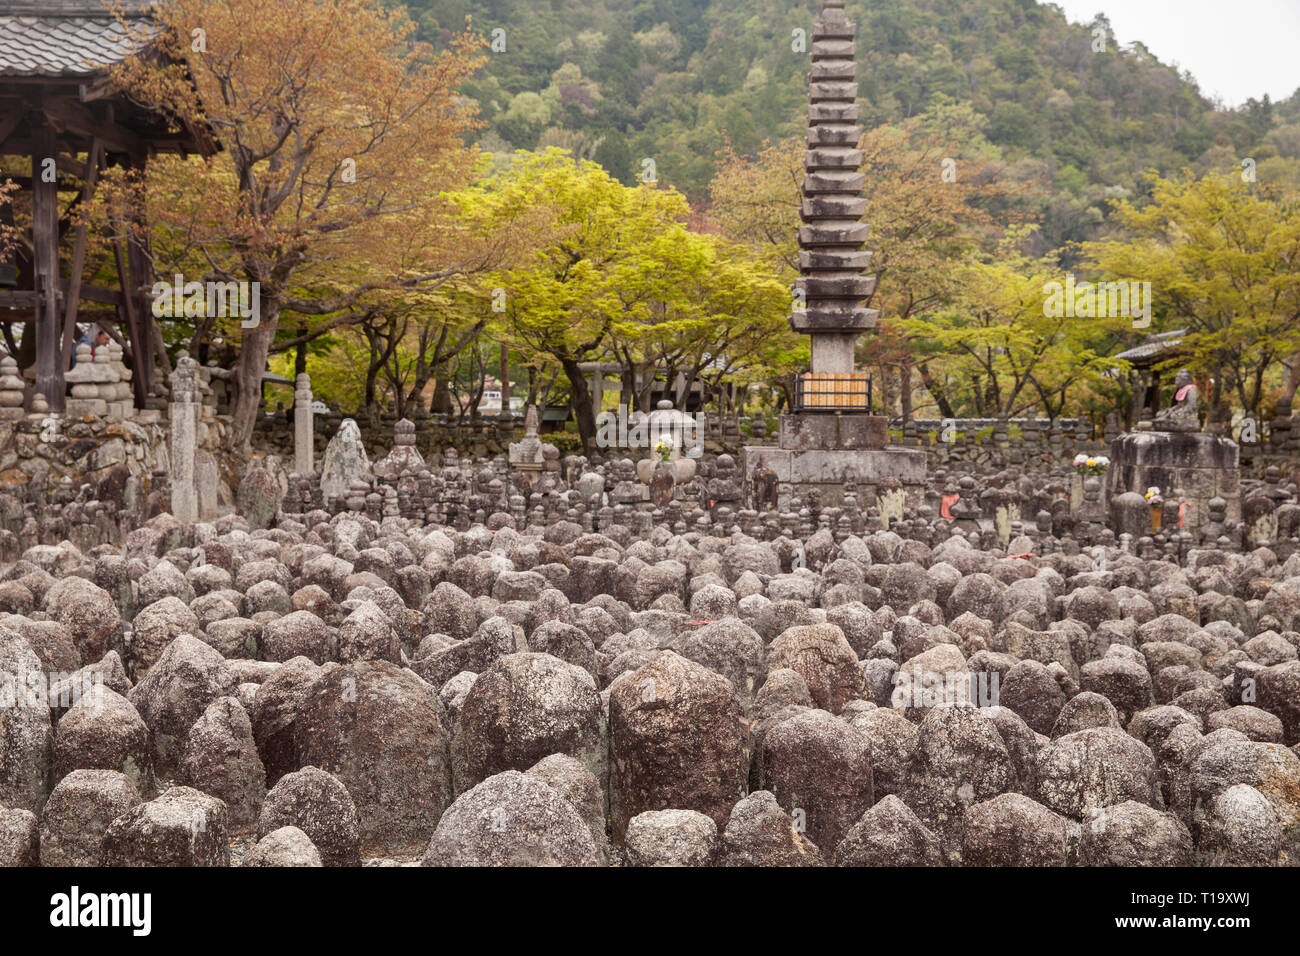 Grounds of Adashino Nembutsu-ji temple and cemetery in northwest Kyoto, Japan Stock Photo